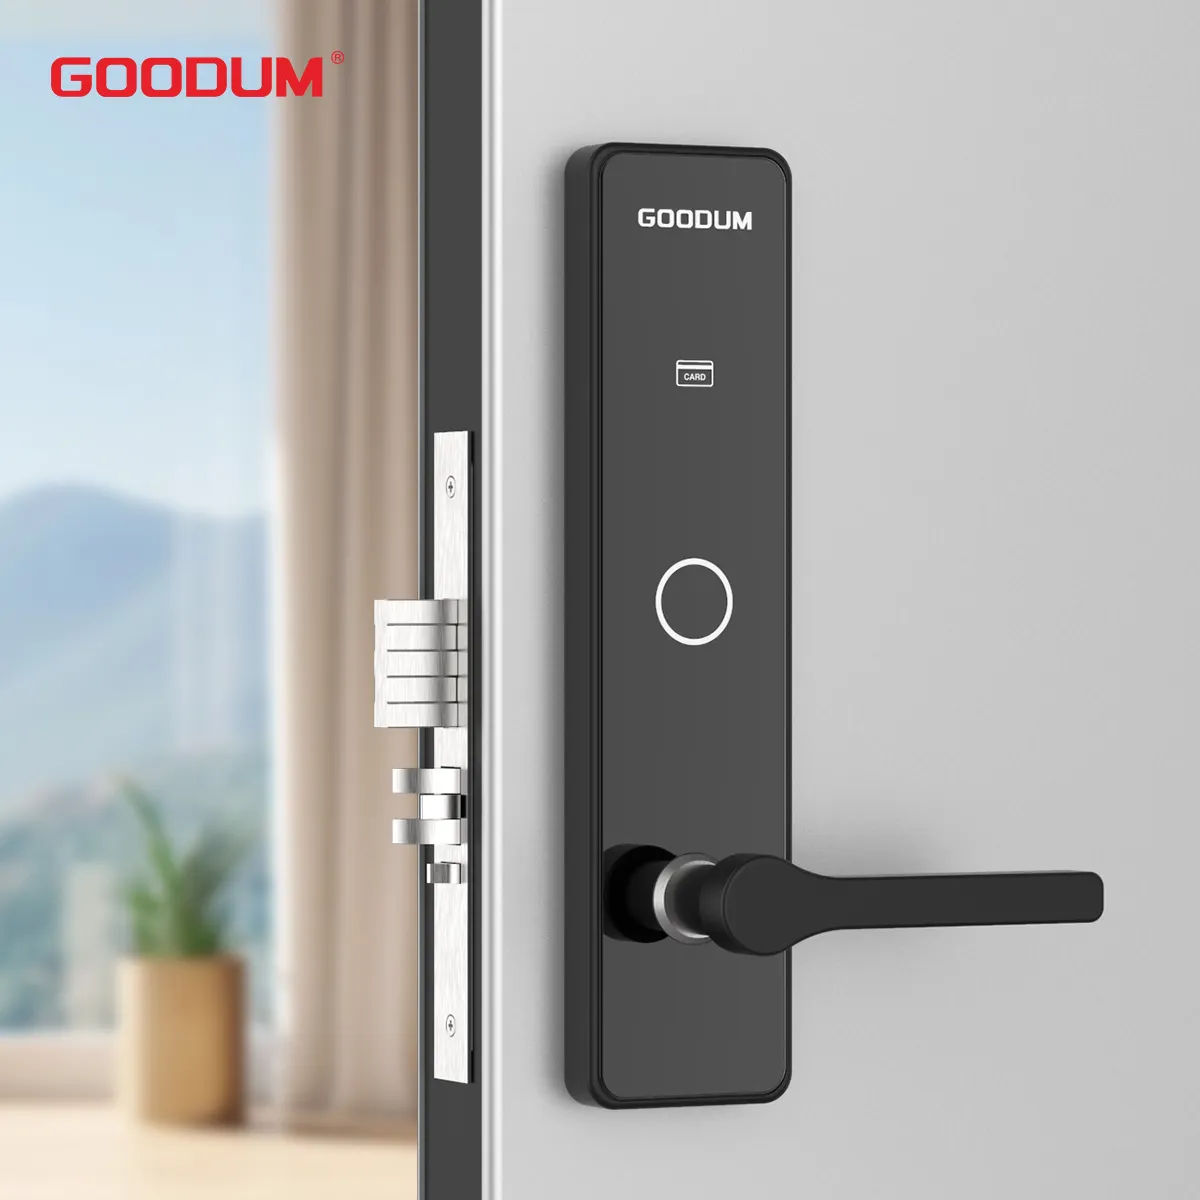 GOODUM Smart serrature RFID porta di sicurezza blocco per chiavi portachiavi Hotel produttore-chiave fornita per un controllo degli accessi più intelligente